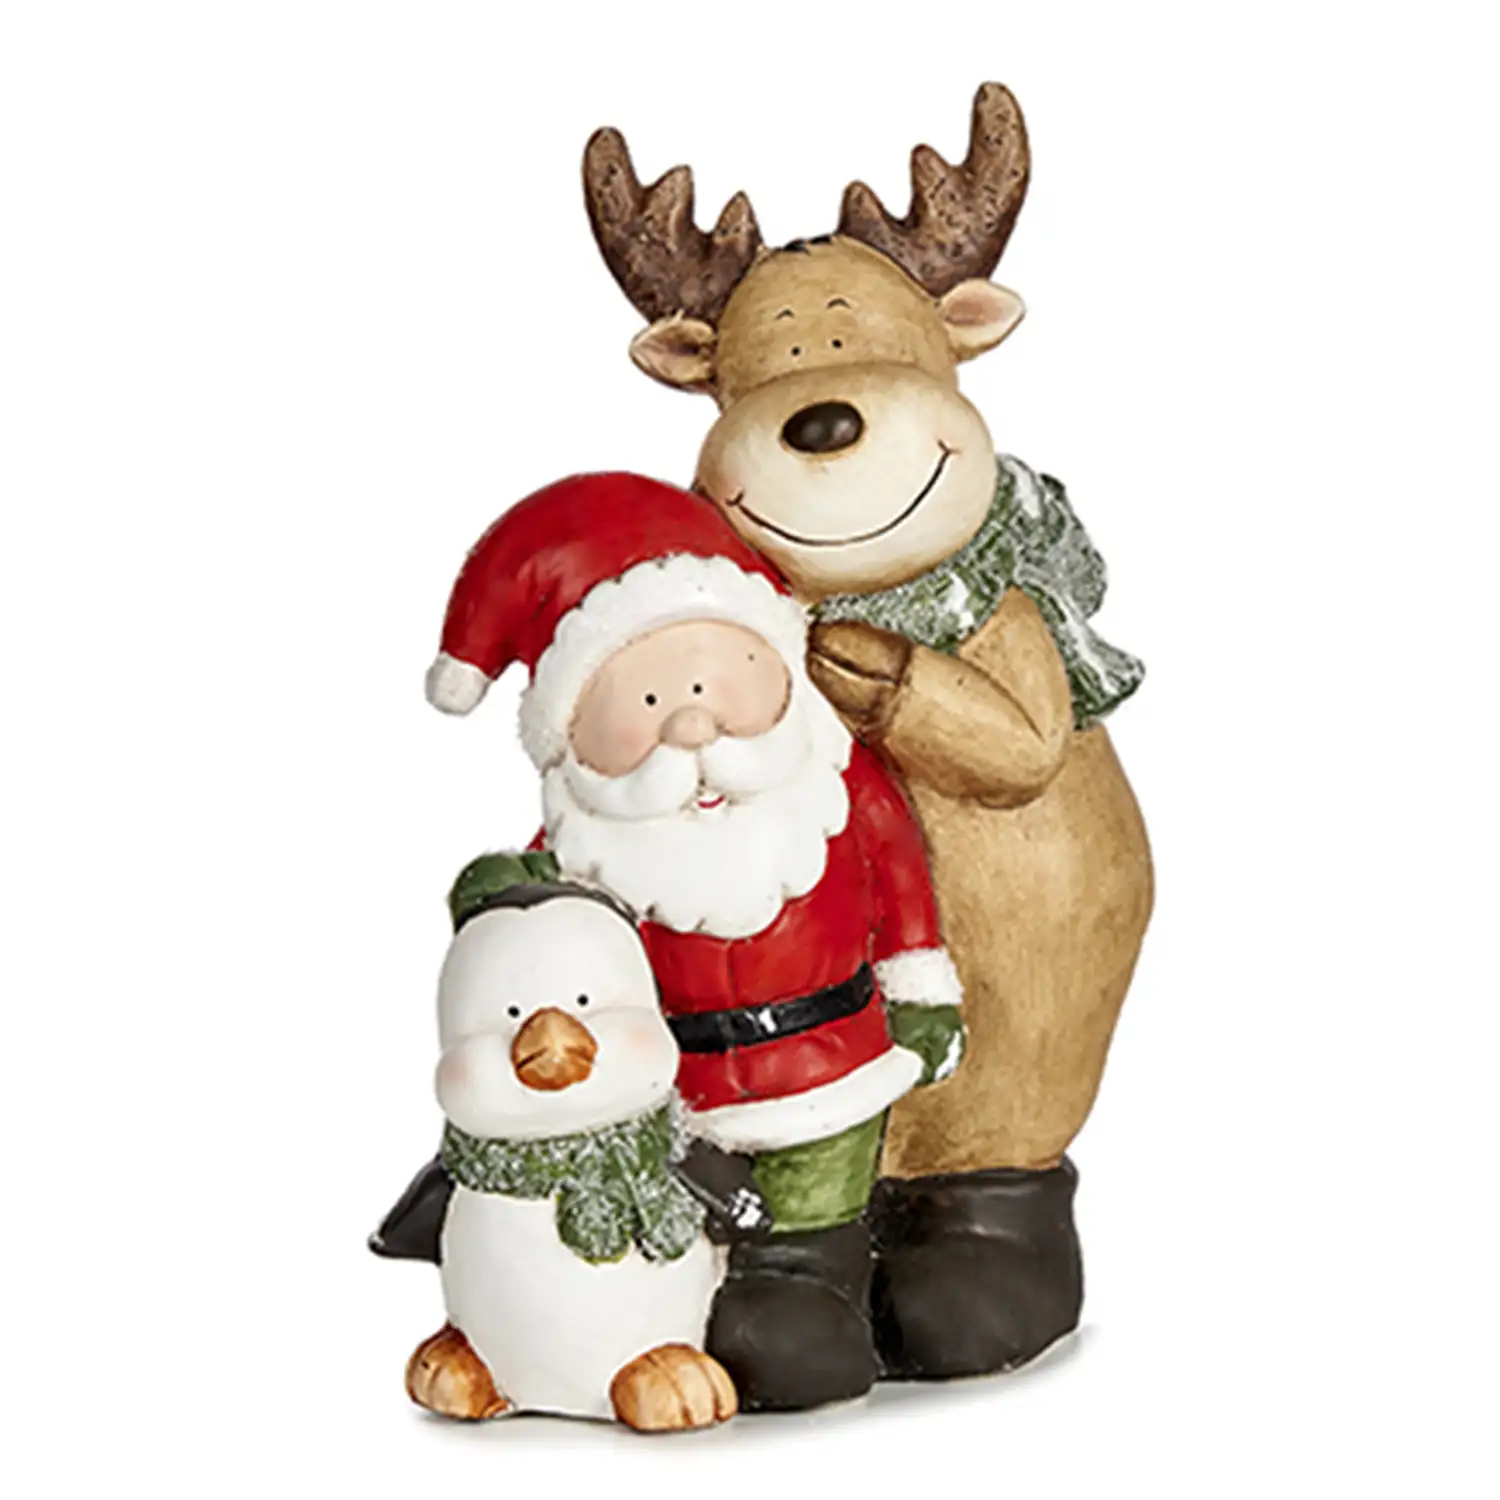 Figura navideña con reno, Santa Claus y pingüino.